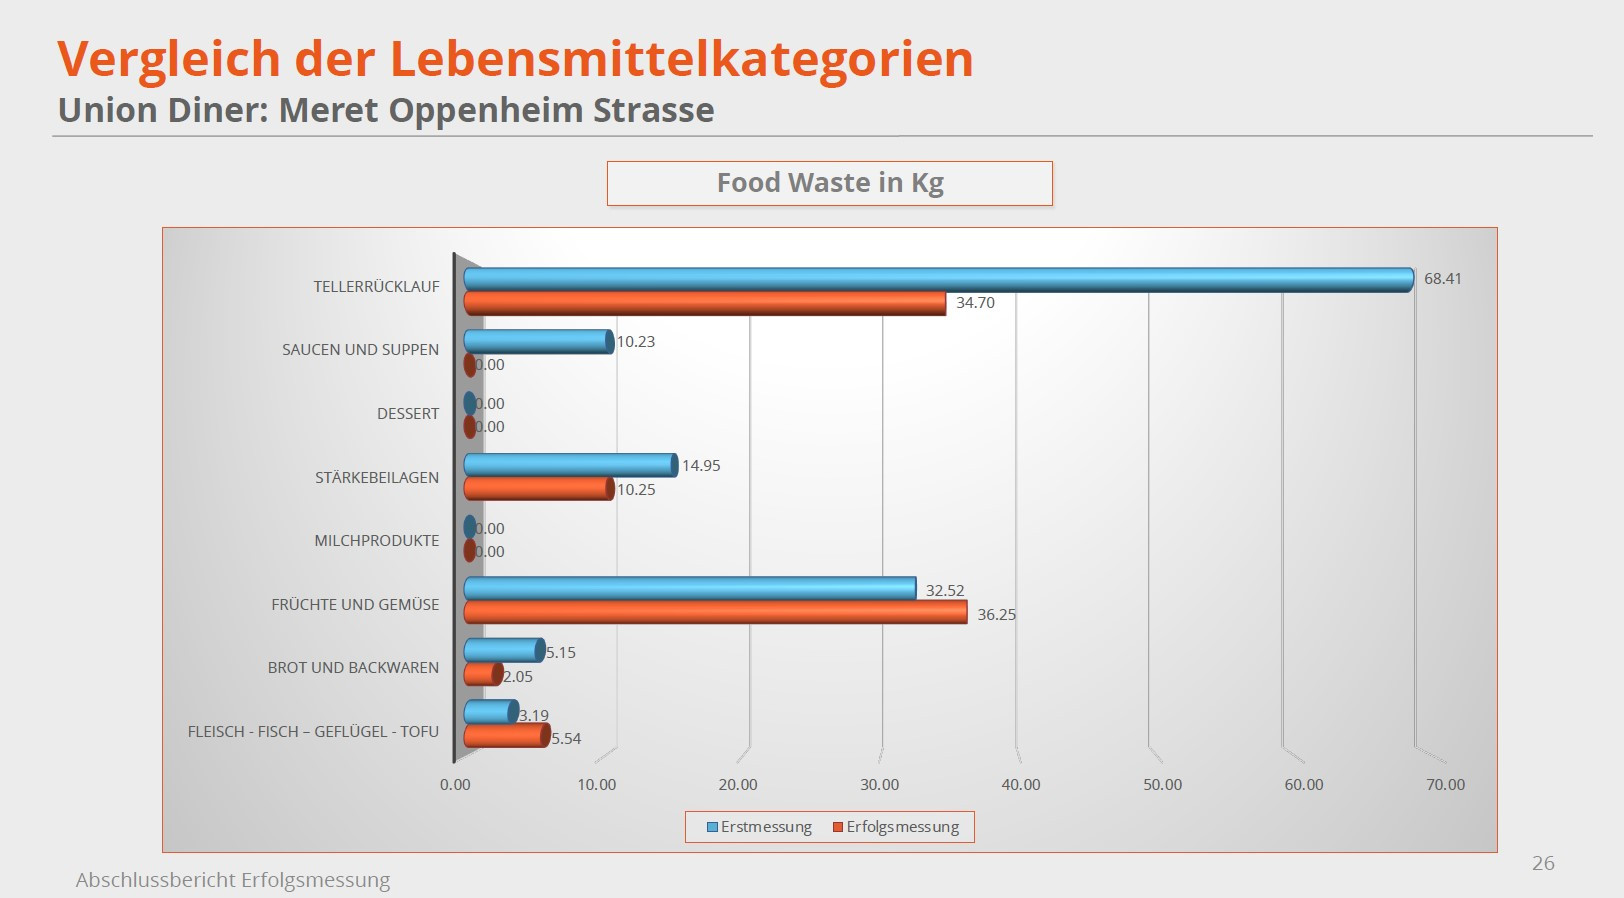 <p>Food Waste in KG: Vergleich der ersten Messperiode zur Erfolgsmessung am Ende des Projekts</p>
